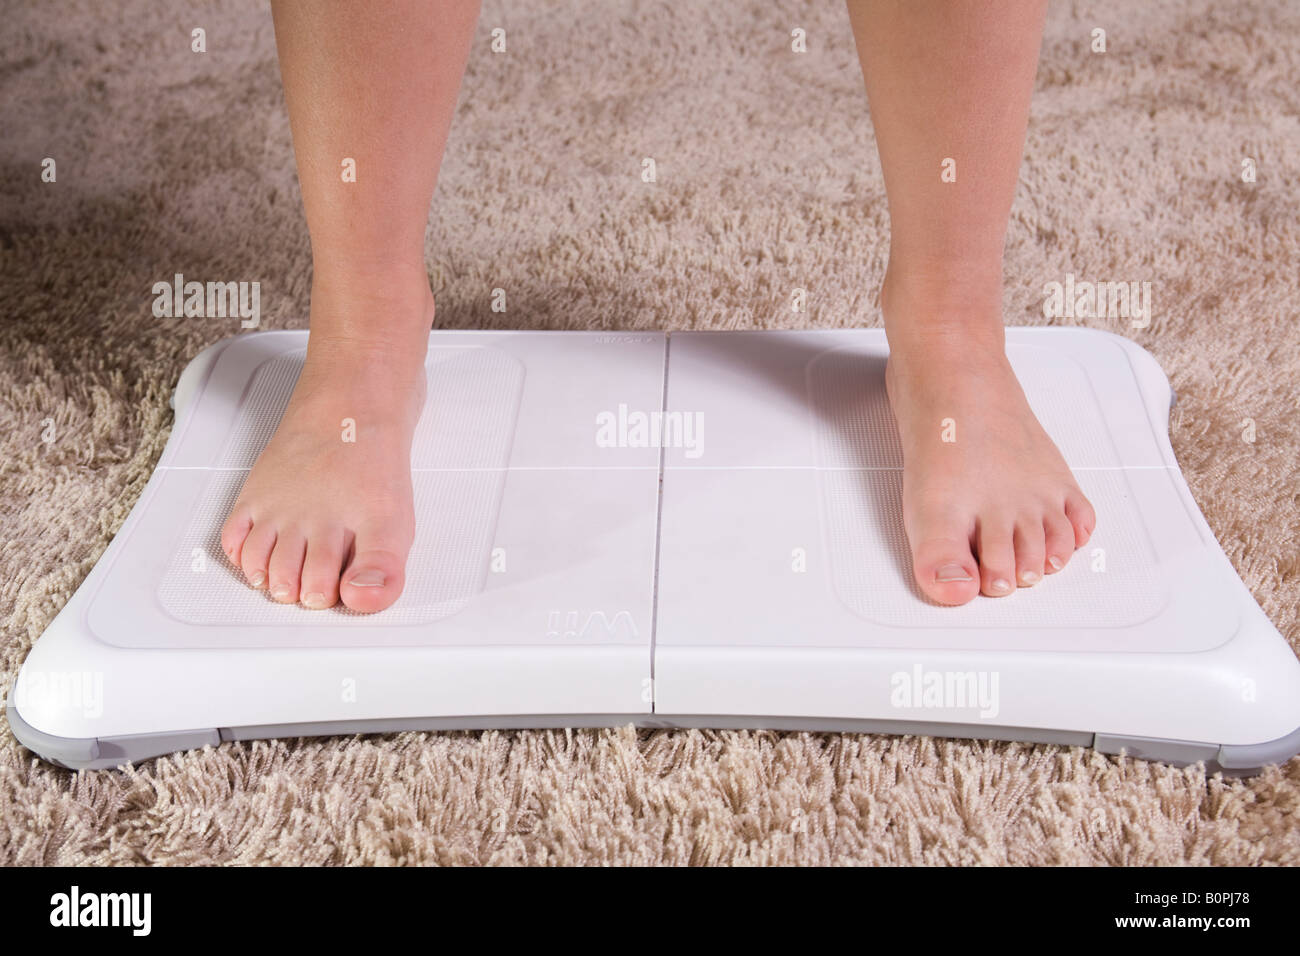 Nintendo Wii Balance Board home formazione: a piedi nudi sulla scheda Foto  stock - Alamy